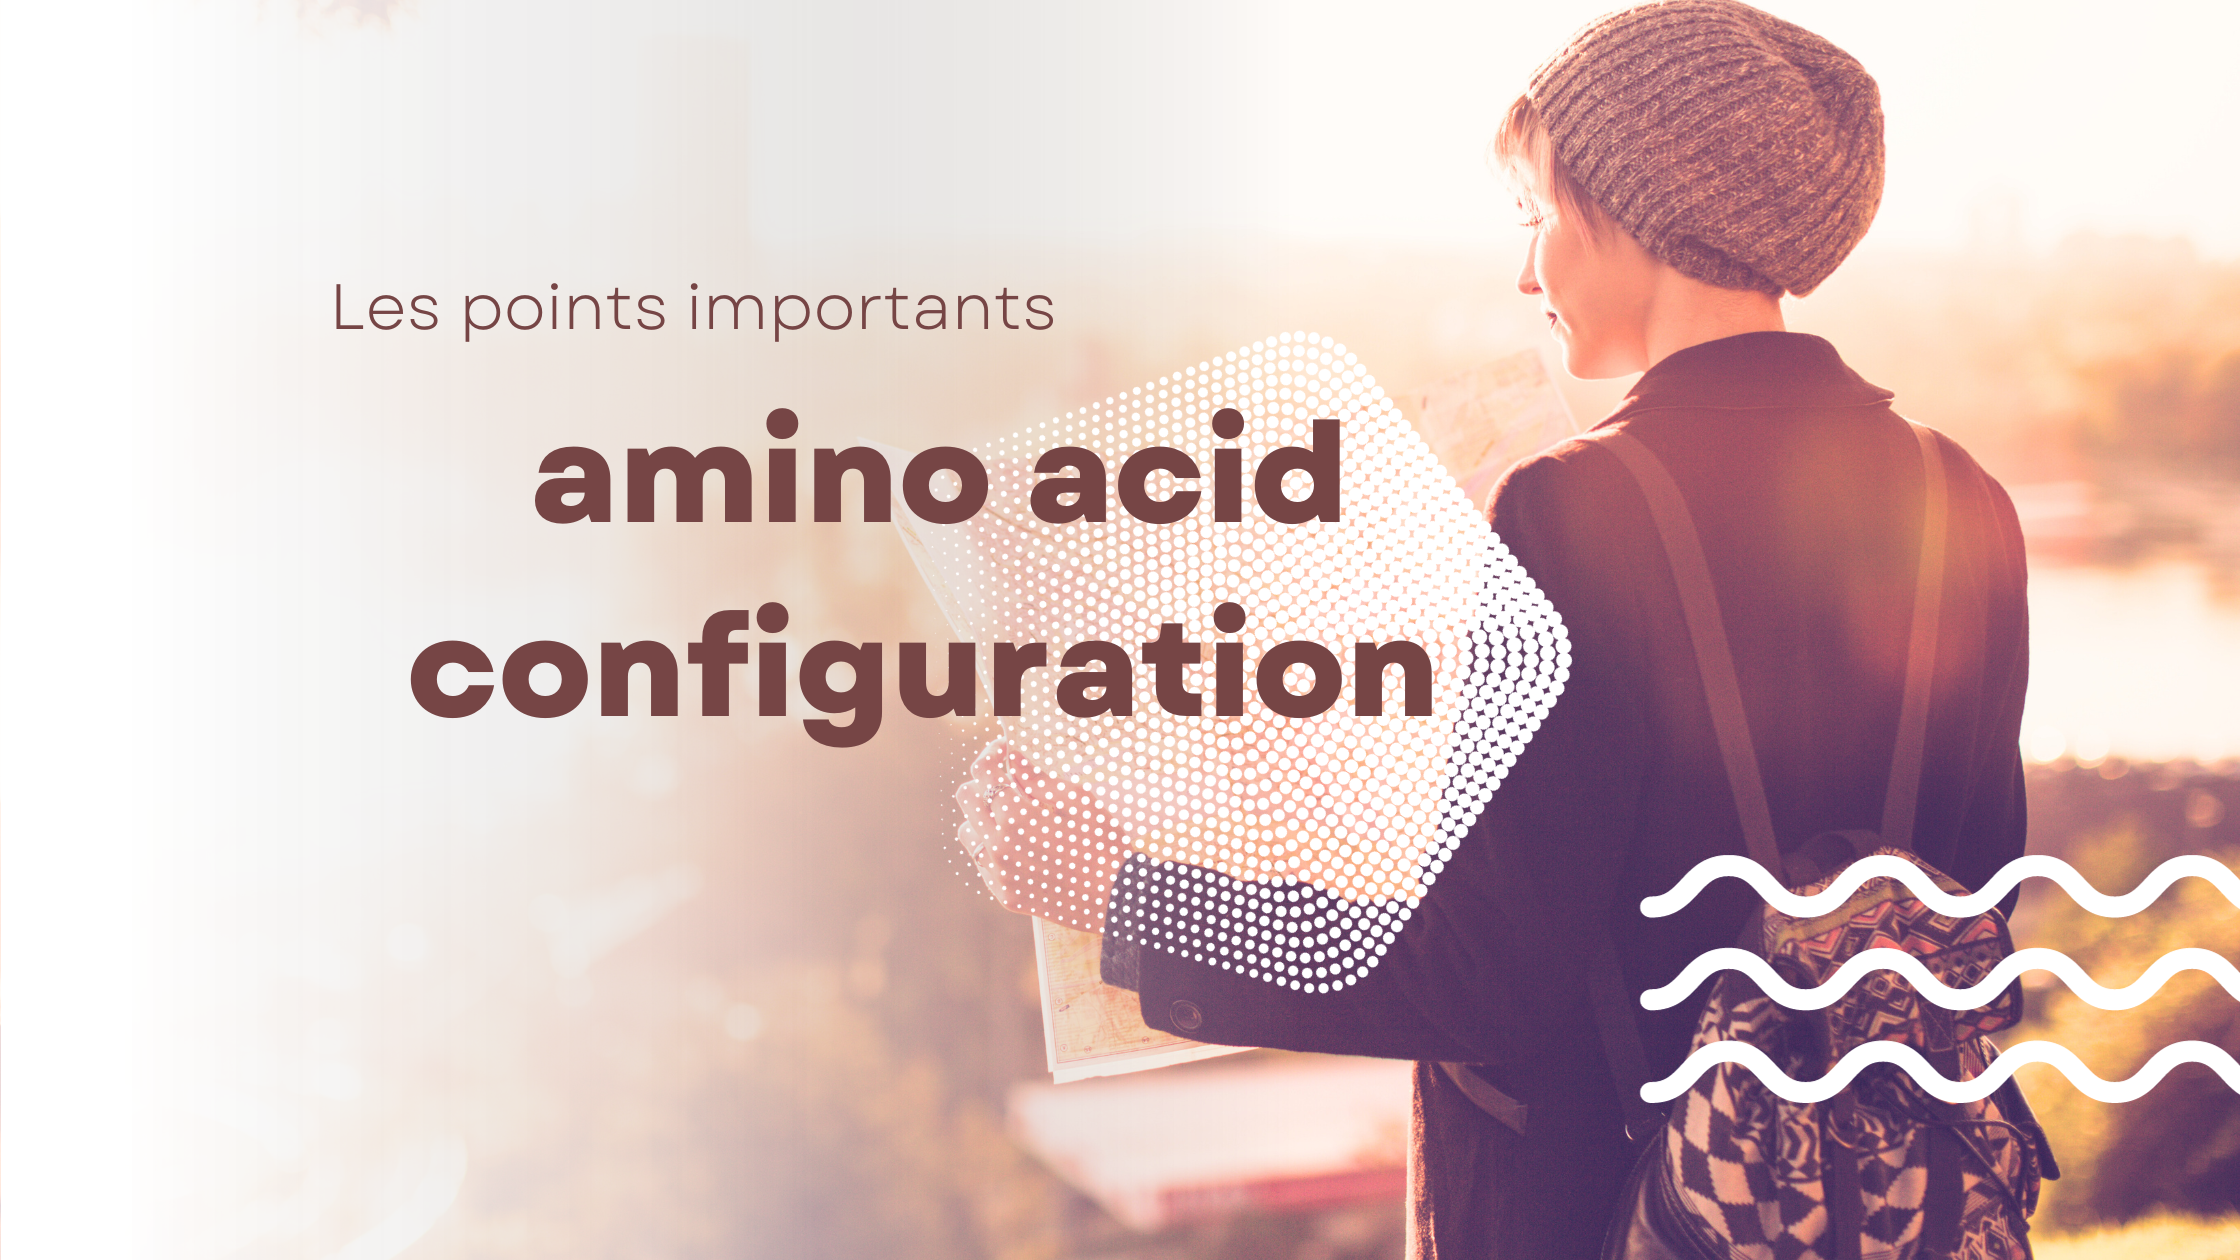 amino acid configuration | Les points importants